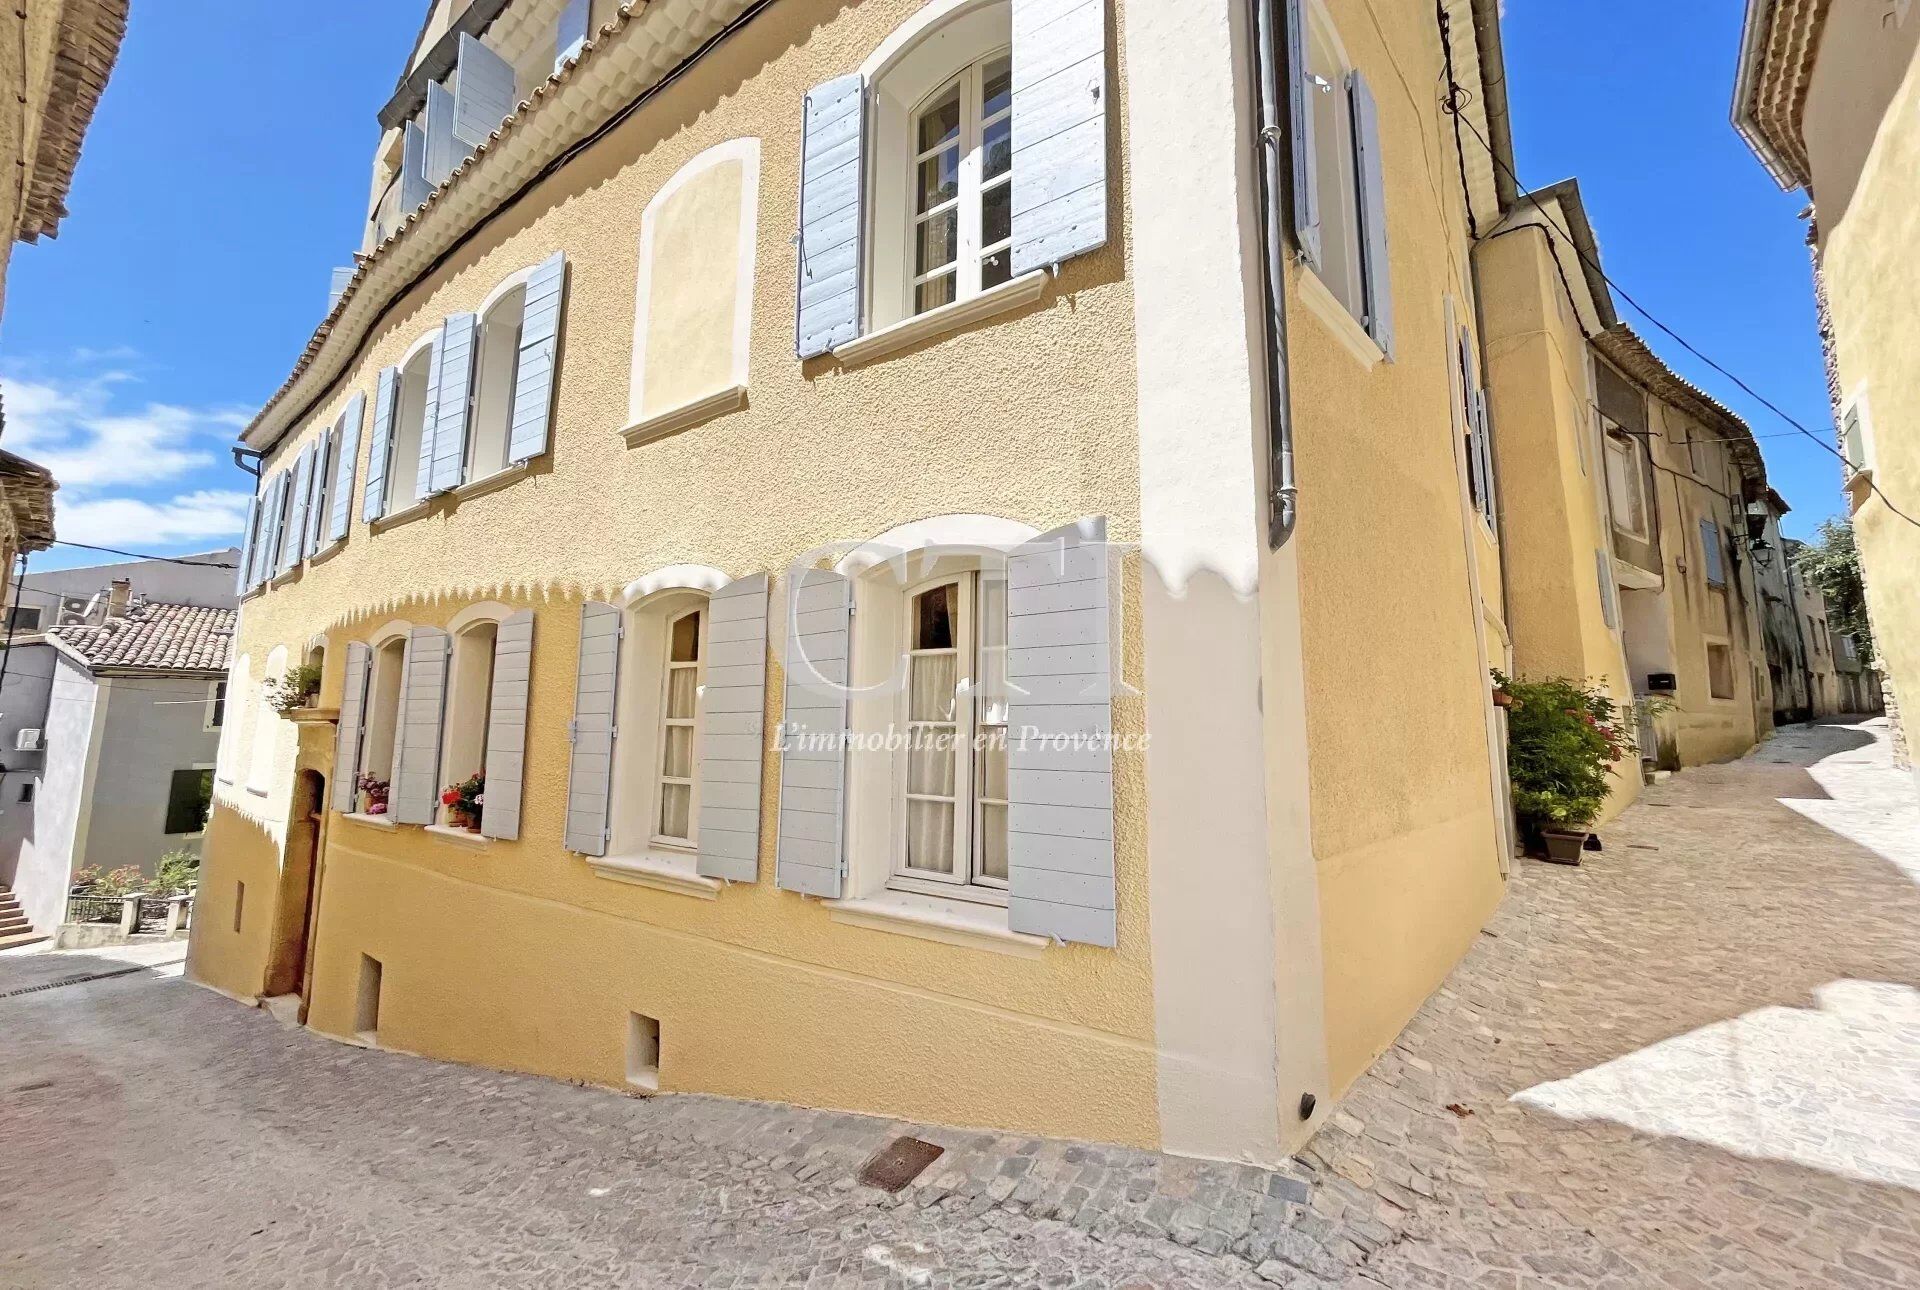 Vente Hôtel particulier 455 m² à Vaison-la-Romaine 980 000 €